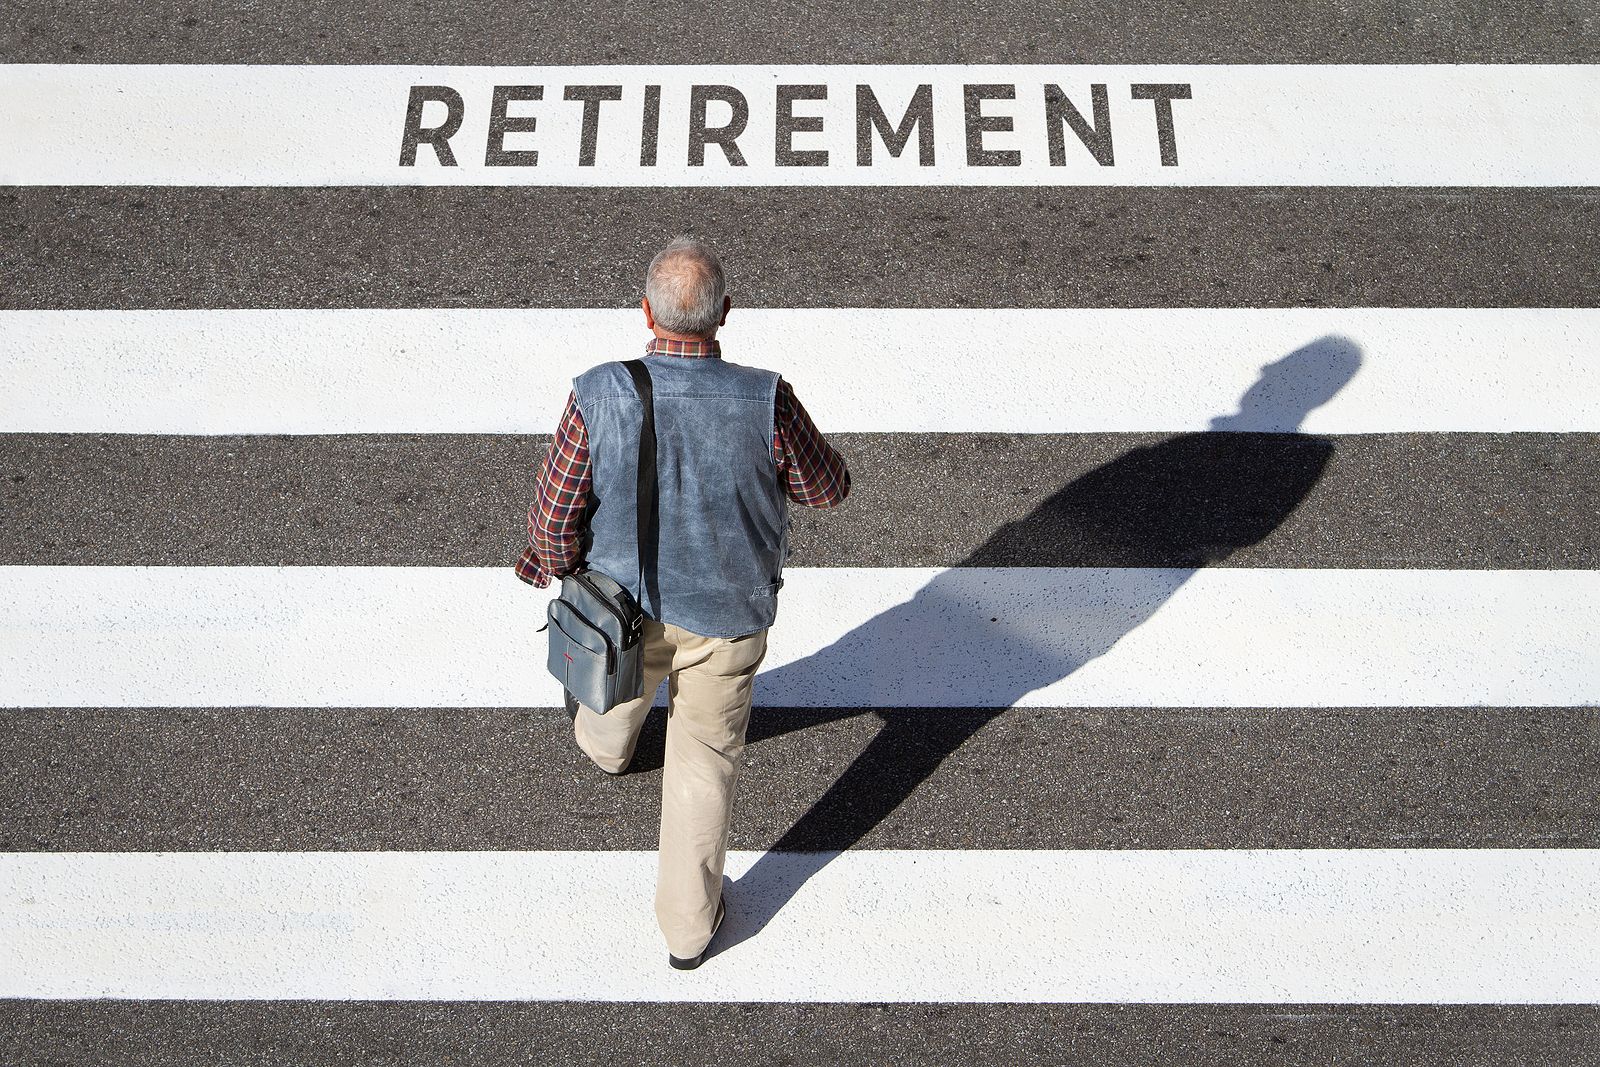 Pensiones: ¿Qué requisitos debo cumplir para acceder a la jubilación anticipada?